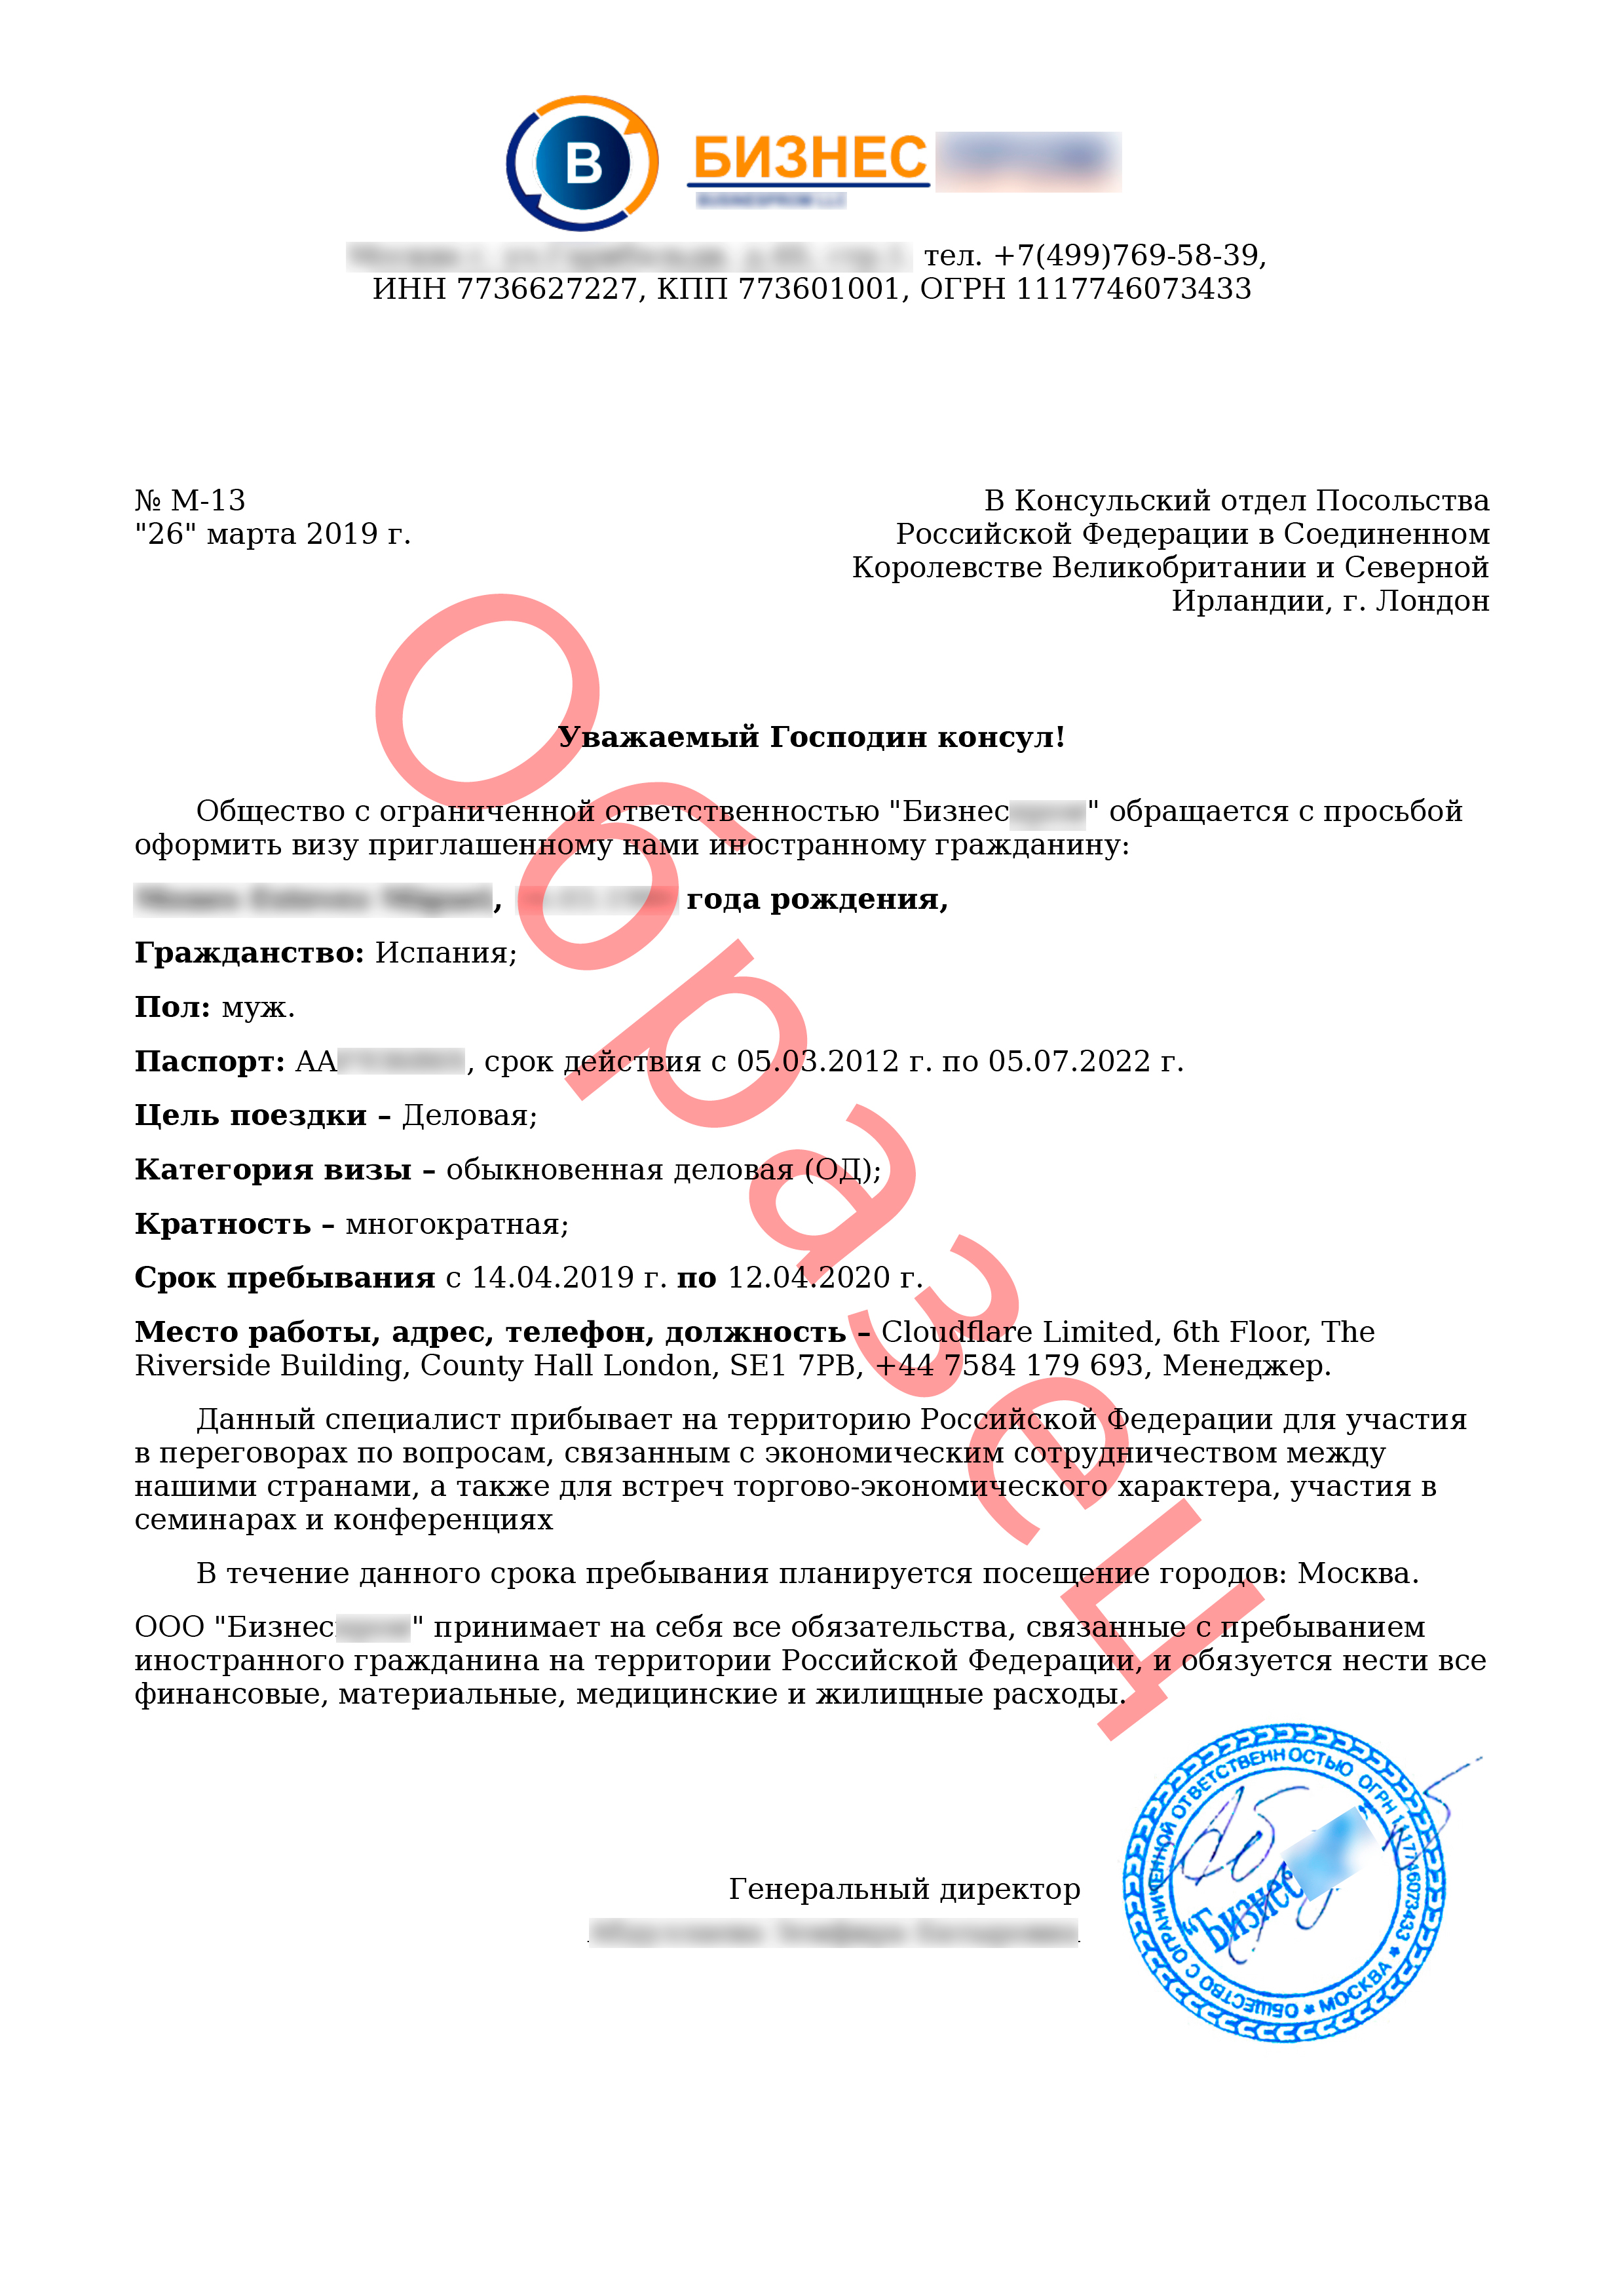 Гостевая виза в россию для иностранцев: оформление, документы и сроки